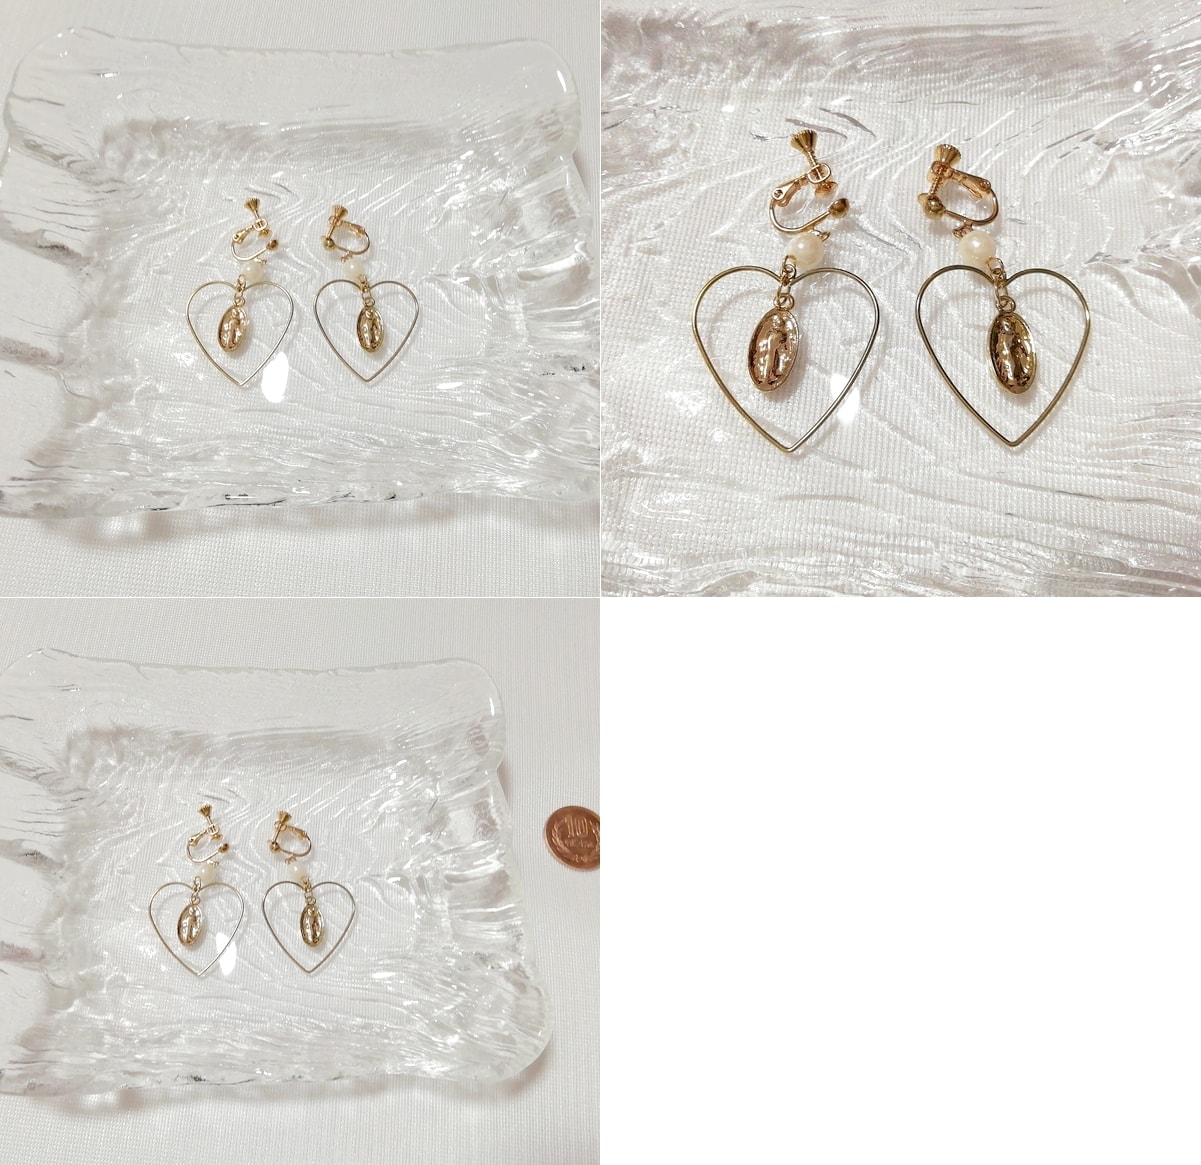 金色ハートワイヤー葉っぱイヤリング/ジュエリー/アクセサリー Golden heart wire leaf earrings jewelry accessories, レディースアクセサリー, イヤリング, その他